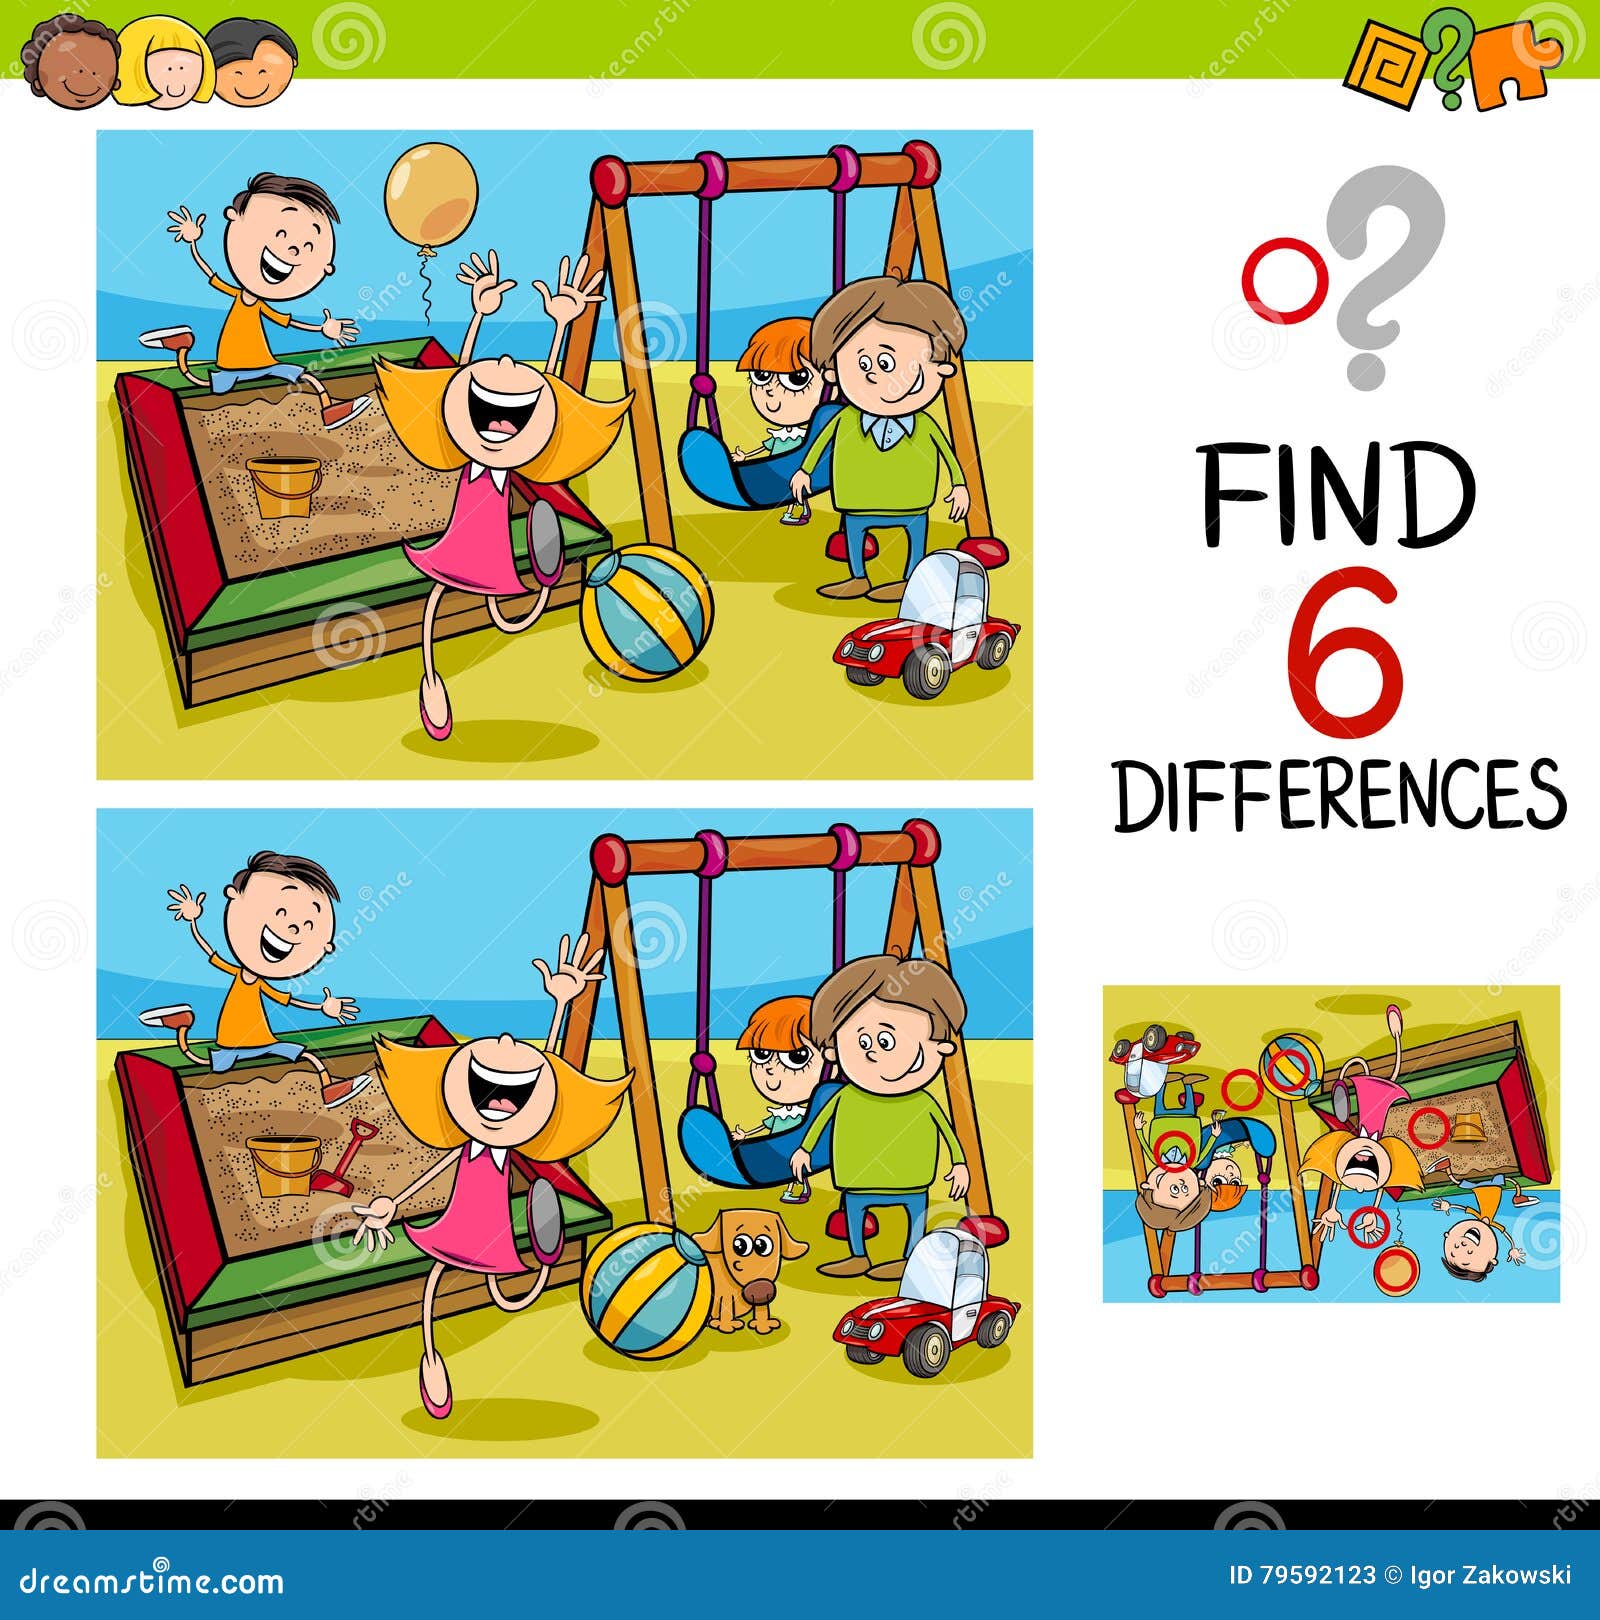 jogo de educação para crianças encontra três diferenças entre duas